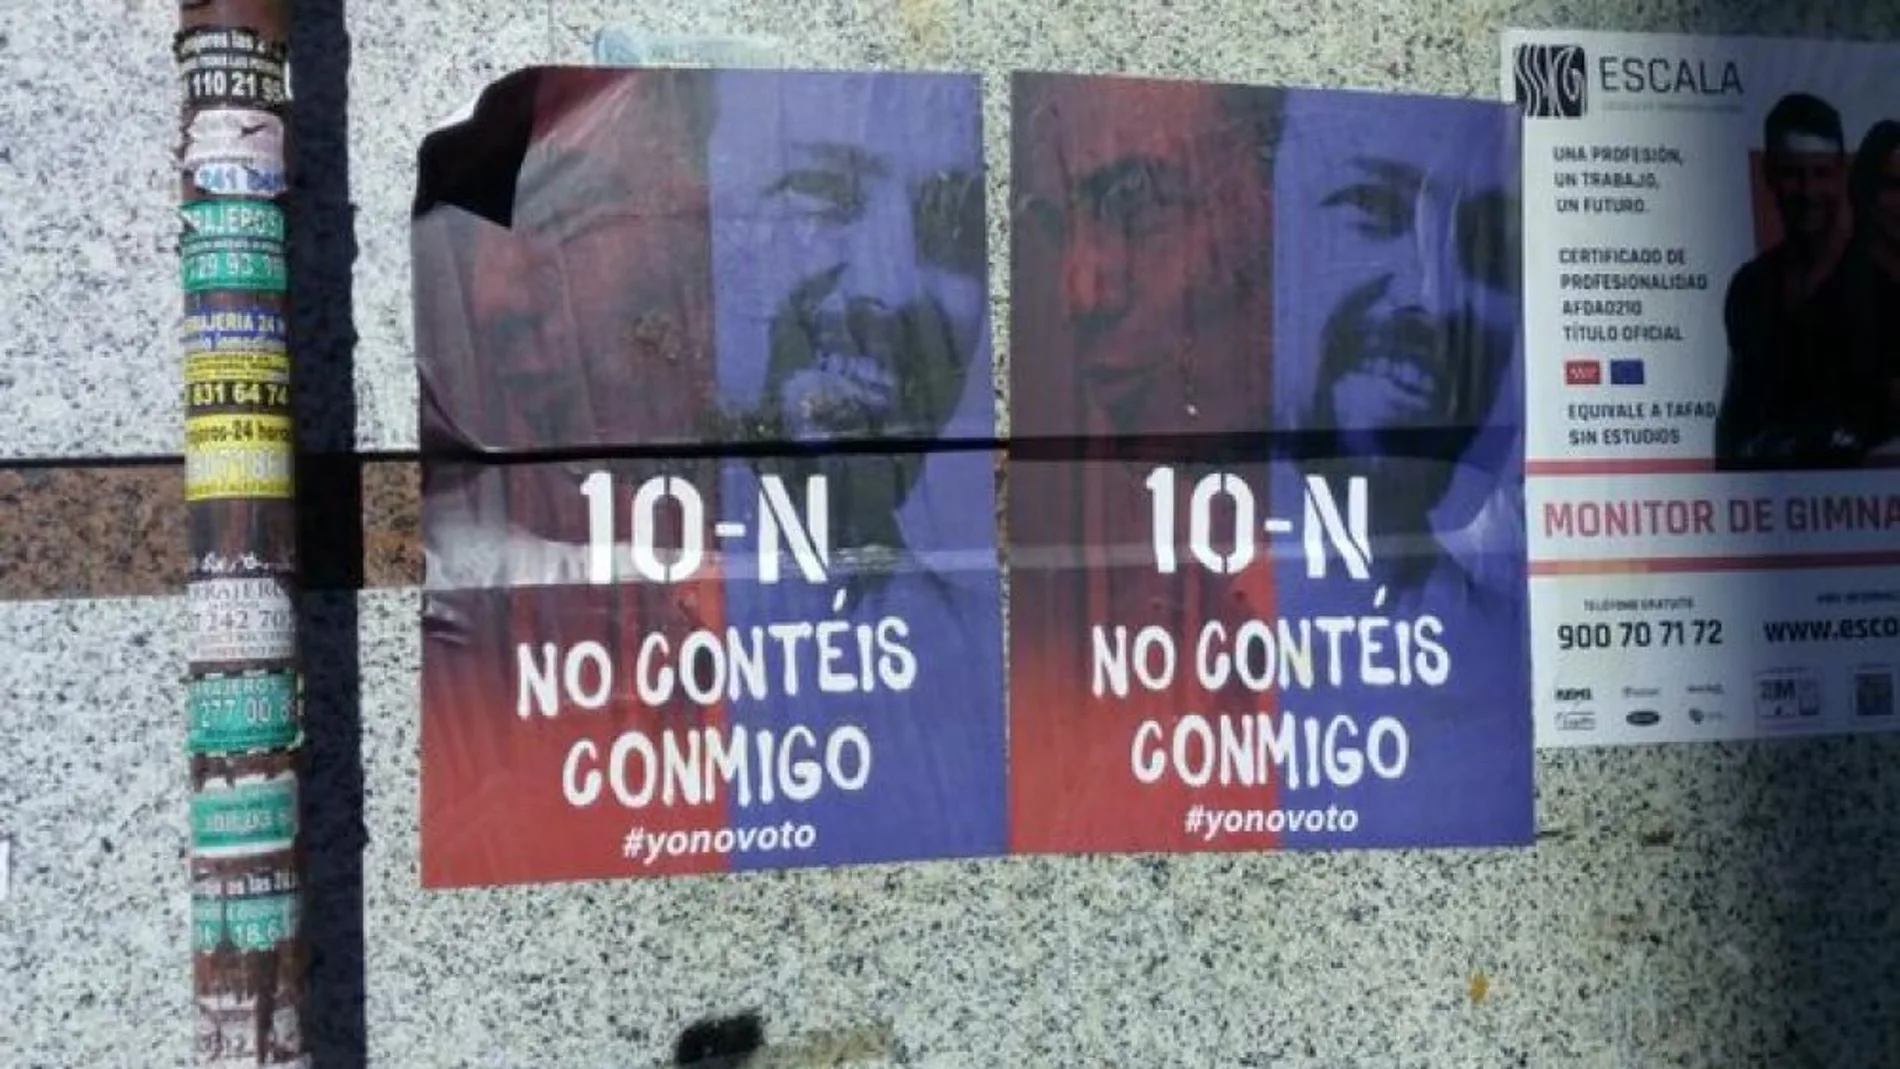 Campaña para promover la abstención en la calles de Madrid